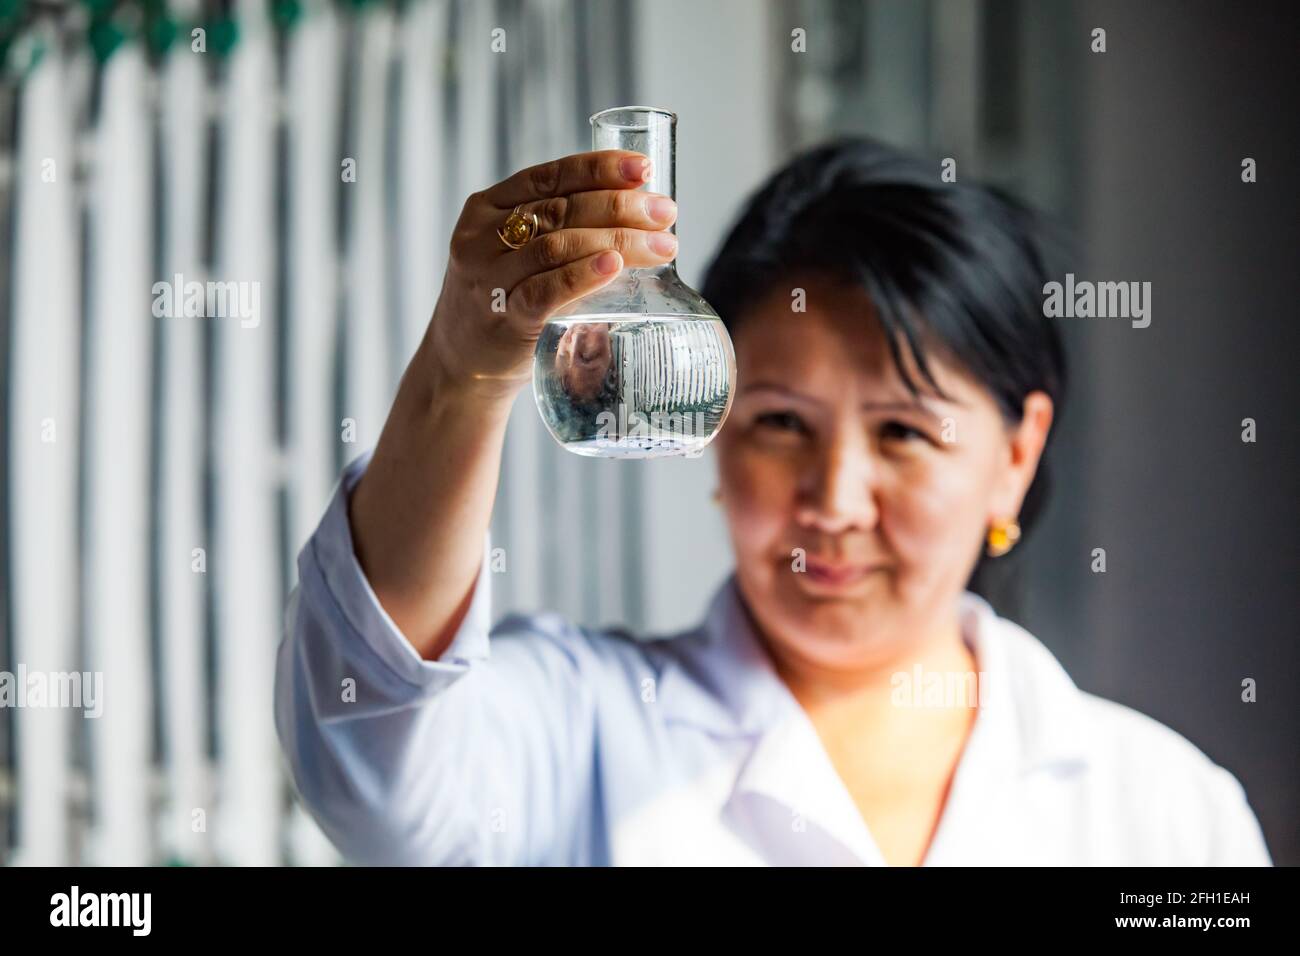 Kyzylorda, Kazakhstan: Station de purification de l'eau. Le chimiste prélève des échantillons d'eau purifiée. Eau transparente dans le flacon (au foyer). La femme est floue. Banque D'Images